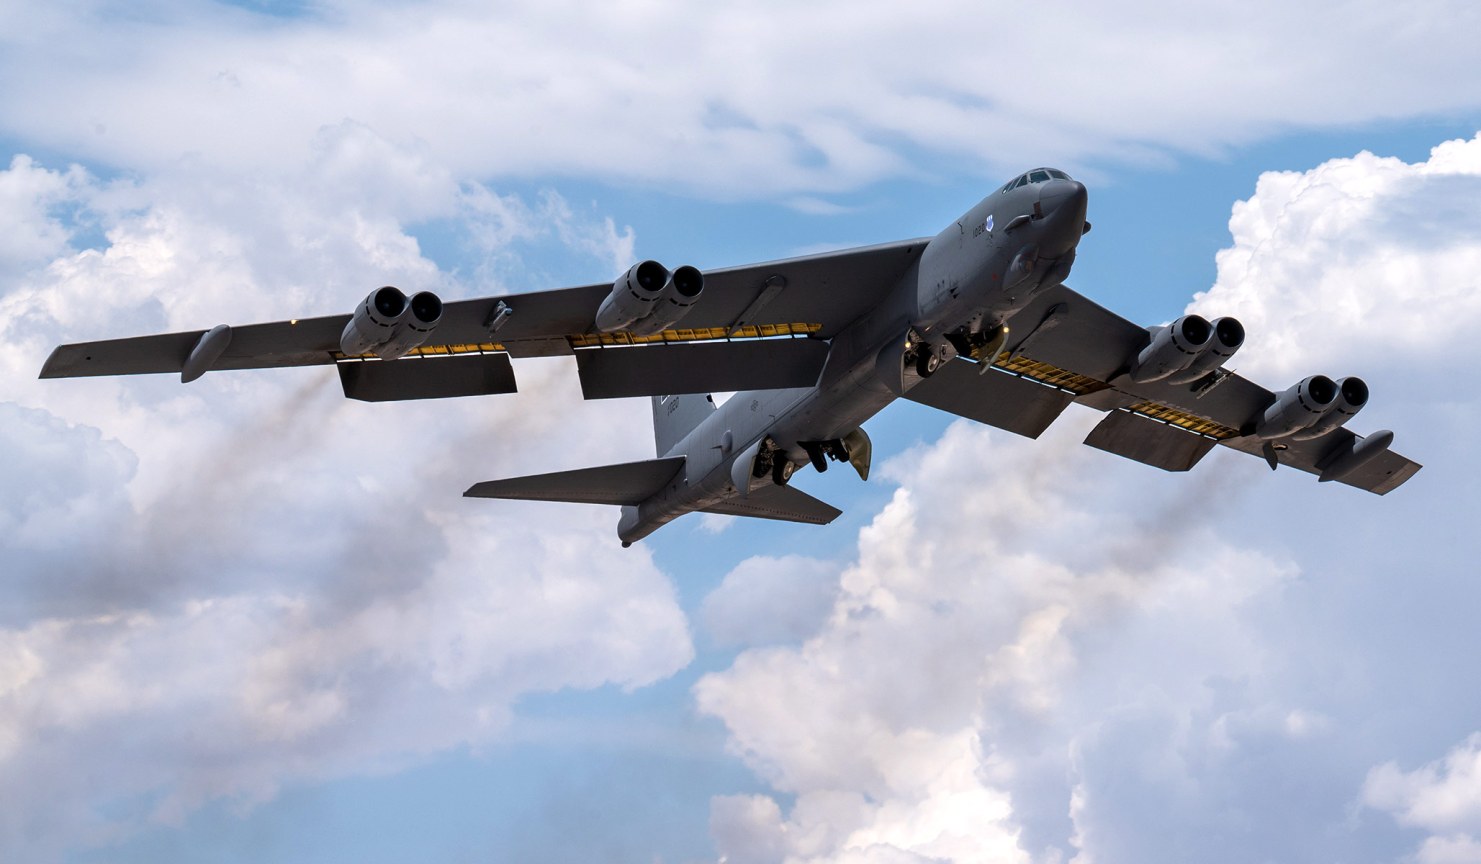 US Air Force wyda 11 mld dolarów na modernizację B-52H - bombowiec ma dostać silnik F130, radar i być zdolny do przenoszenia nowego pocisku nuklearnego o zasięgu 2400 km